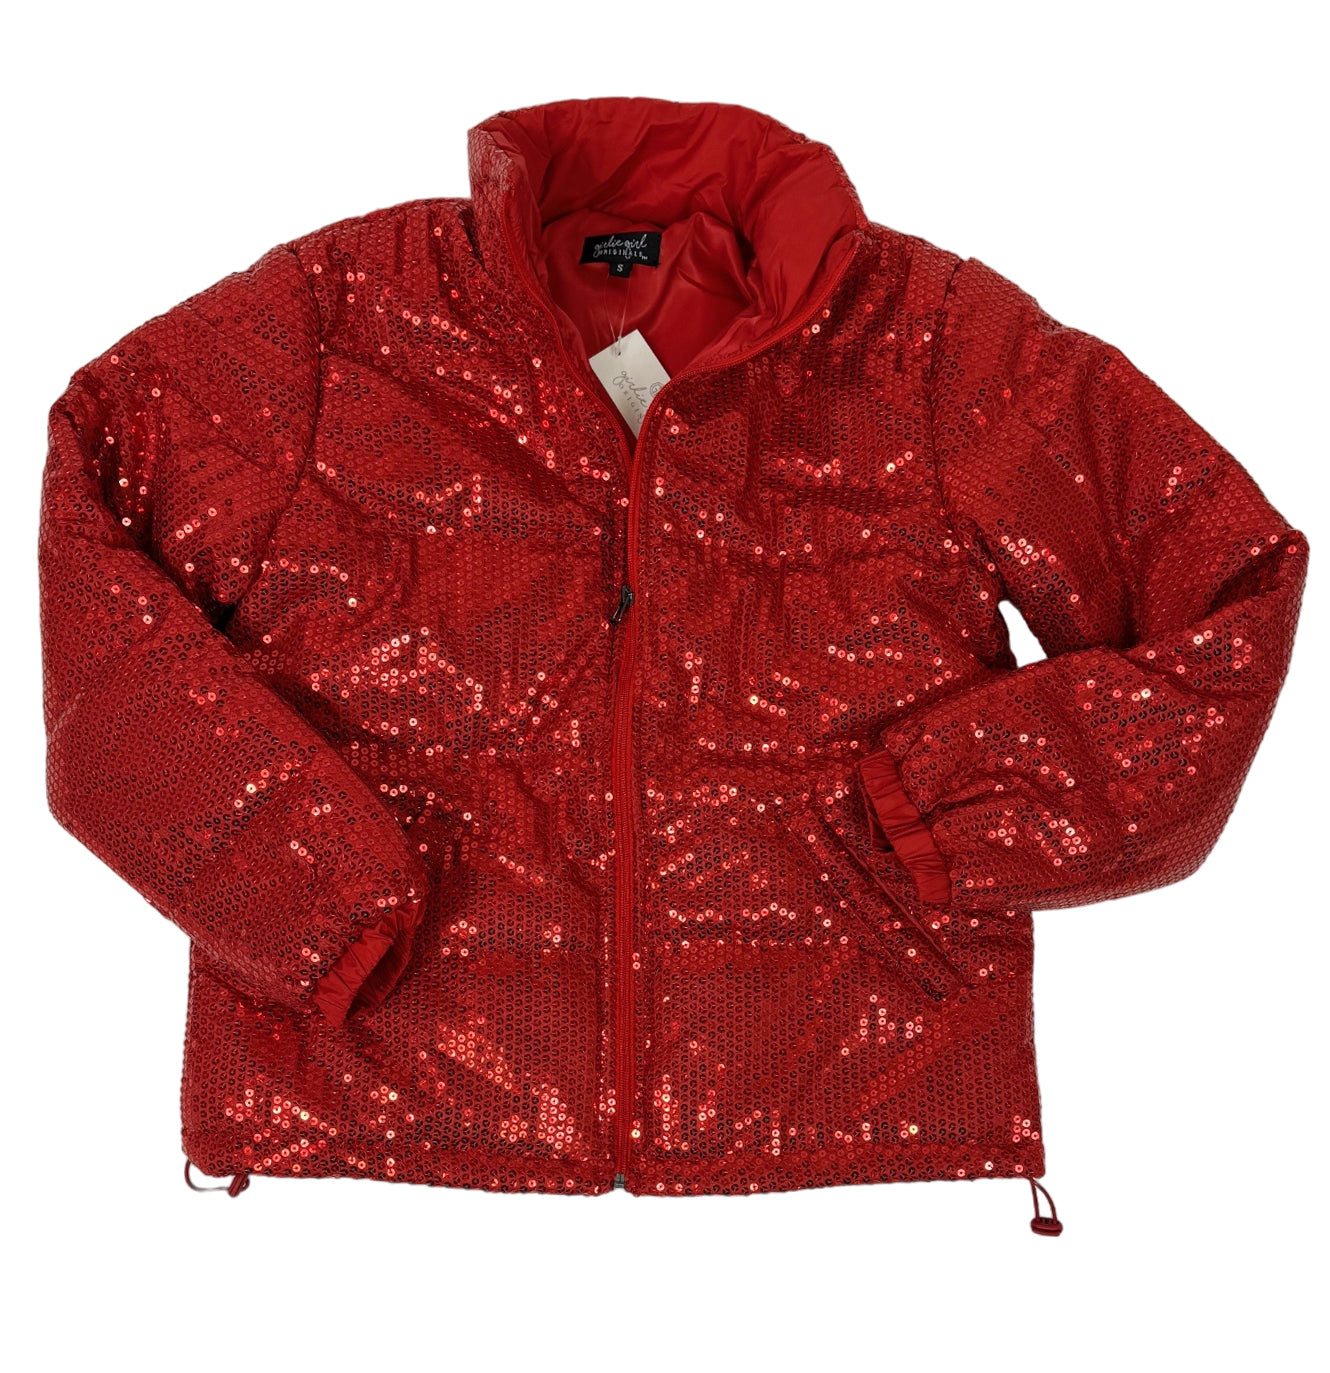 SQ-1999 Red Sequin Zip Up Jacket